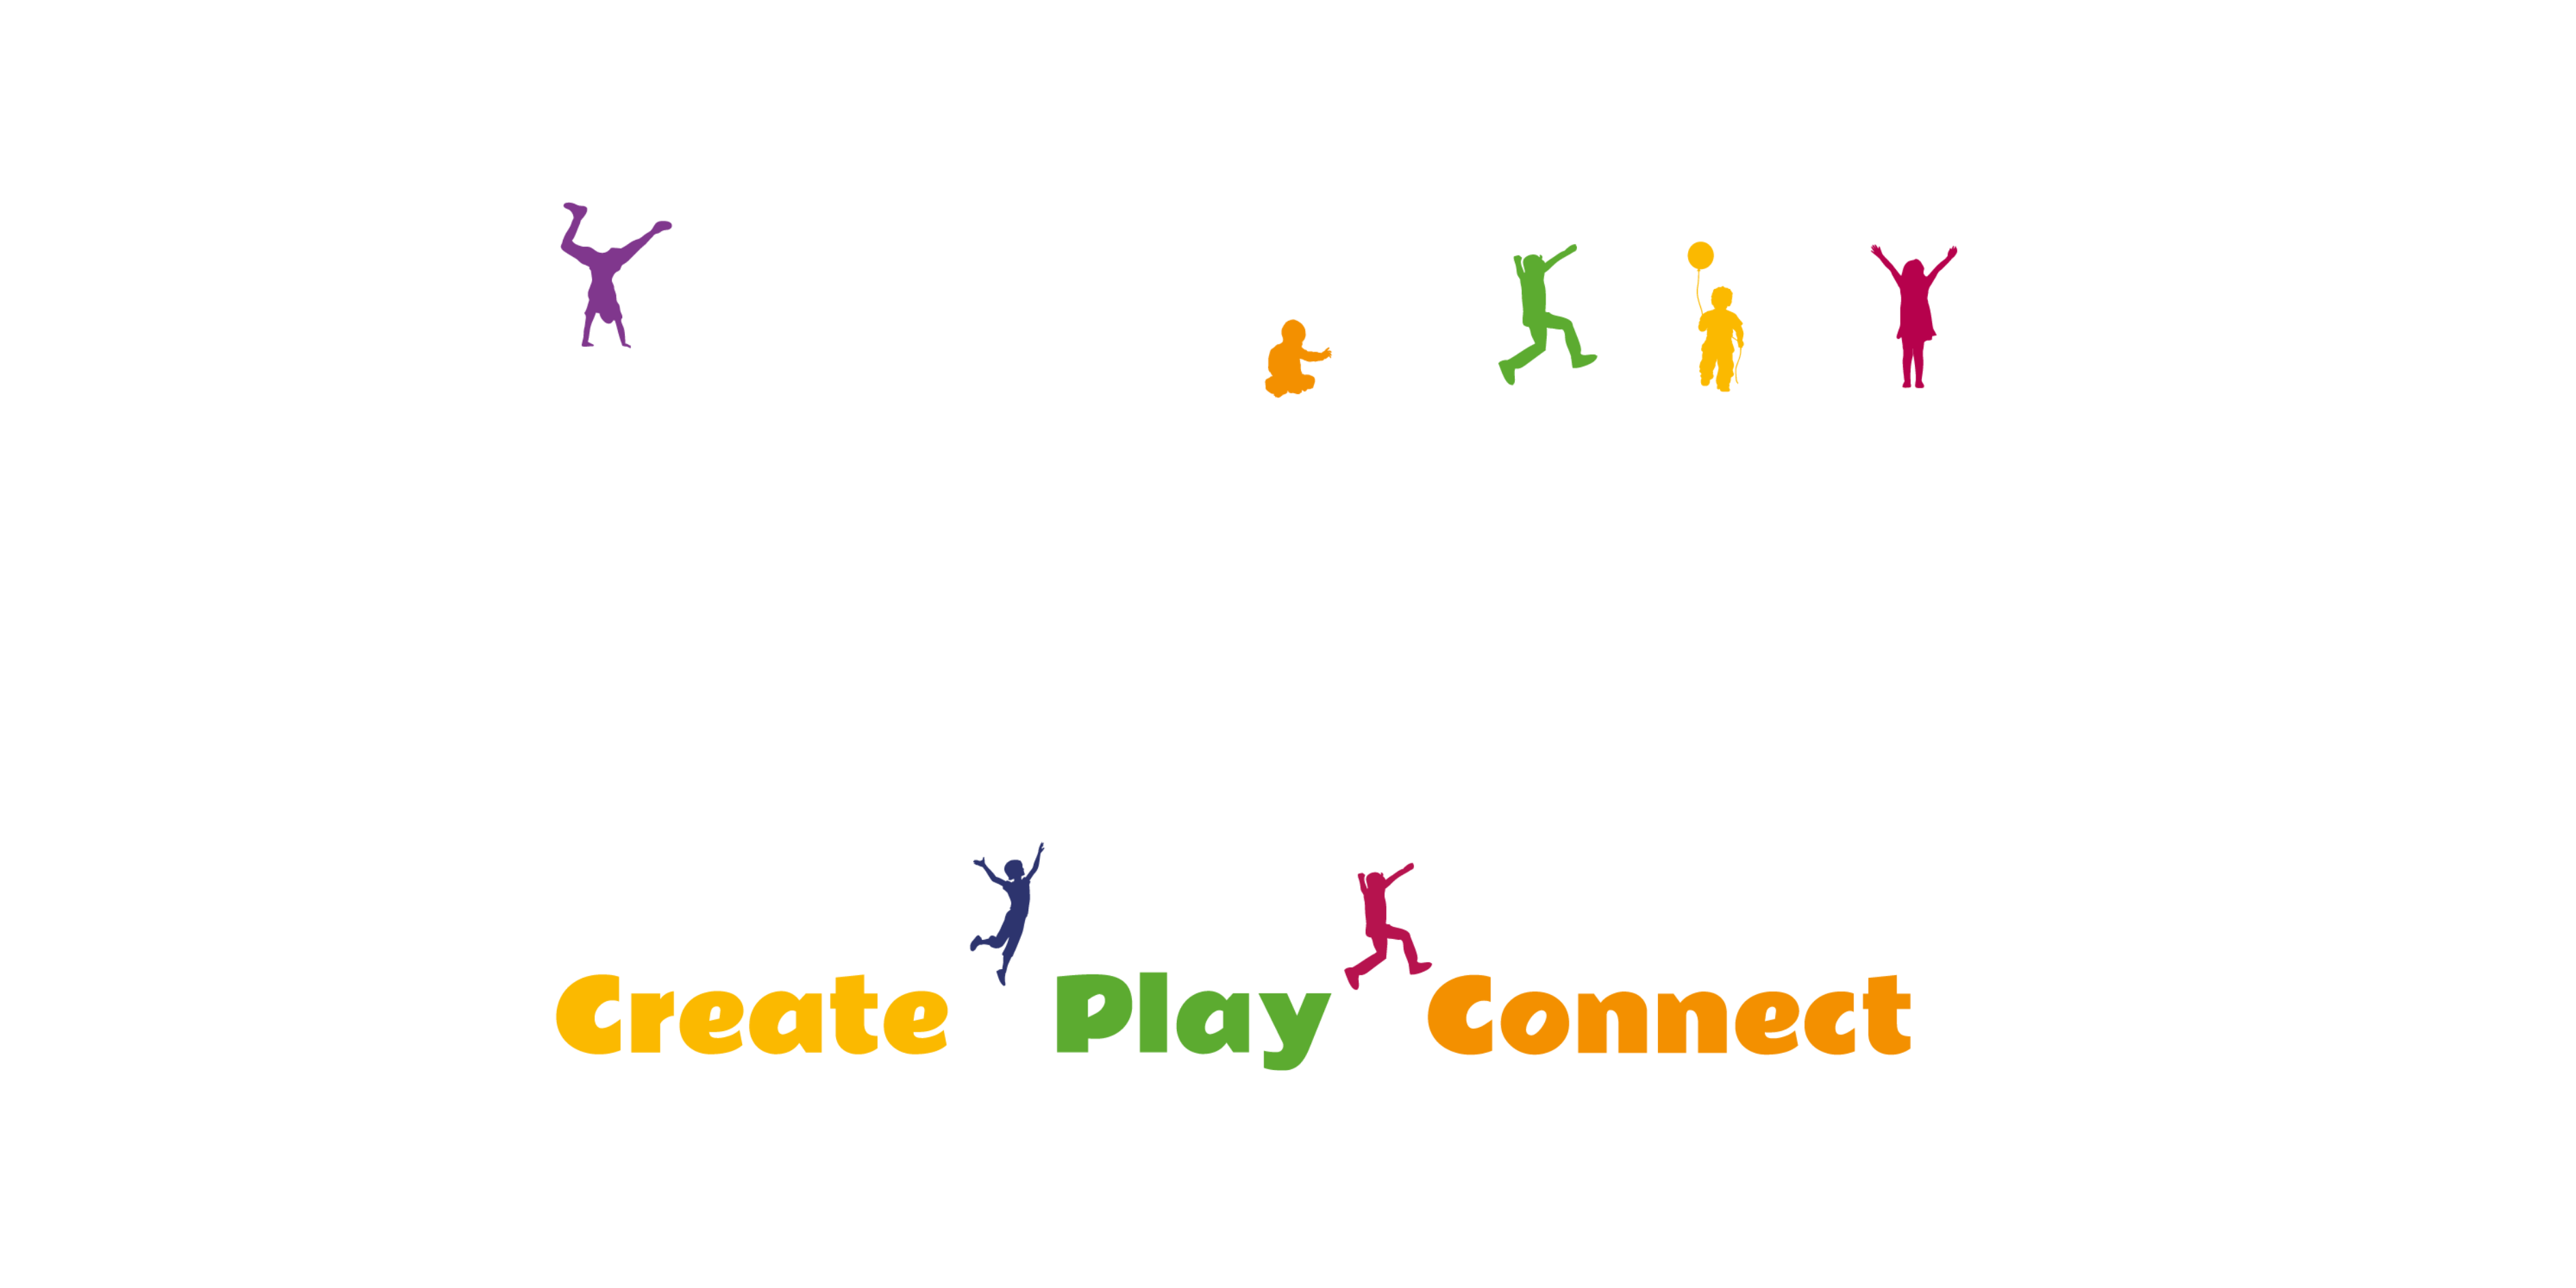 Childrens Week WA